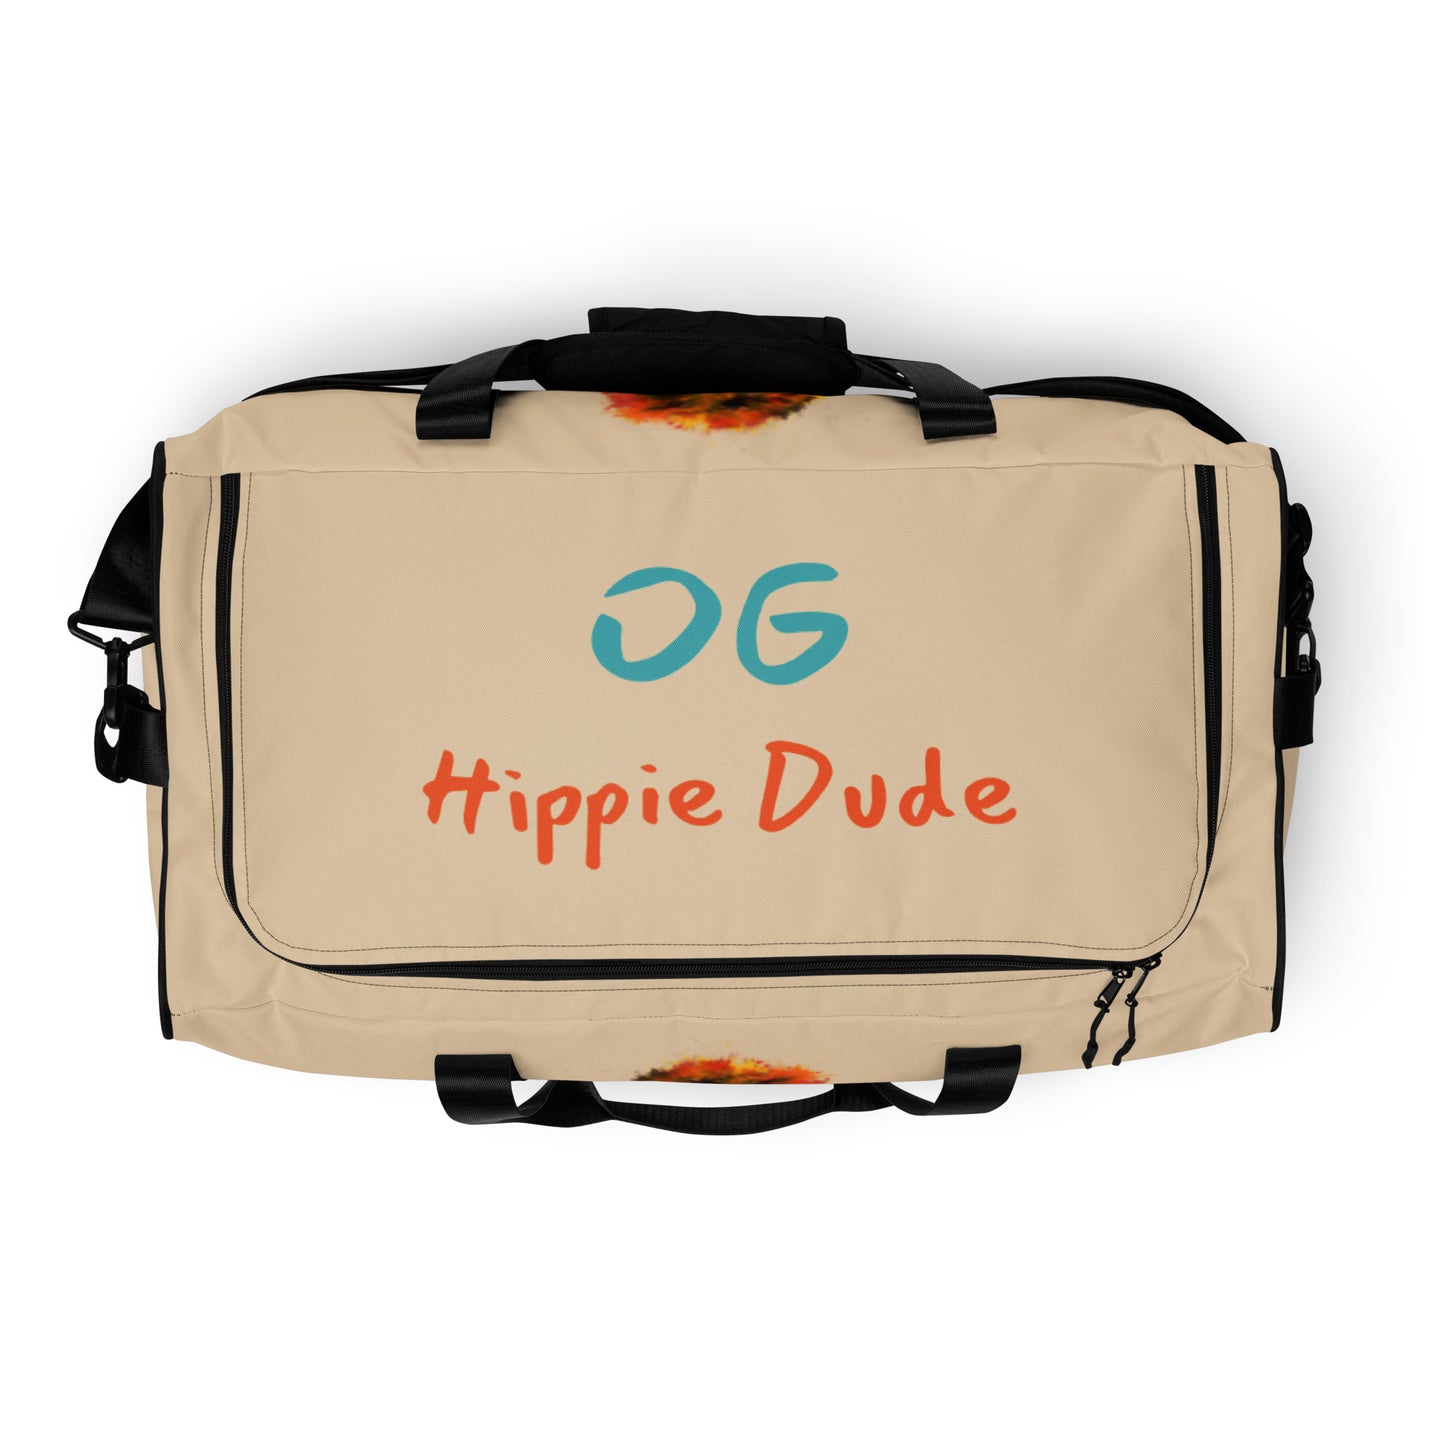 Beige Duffle Bag - OG Hippie Dude